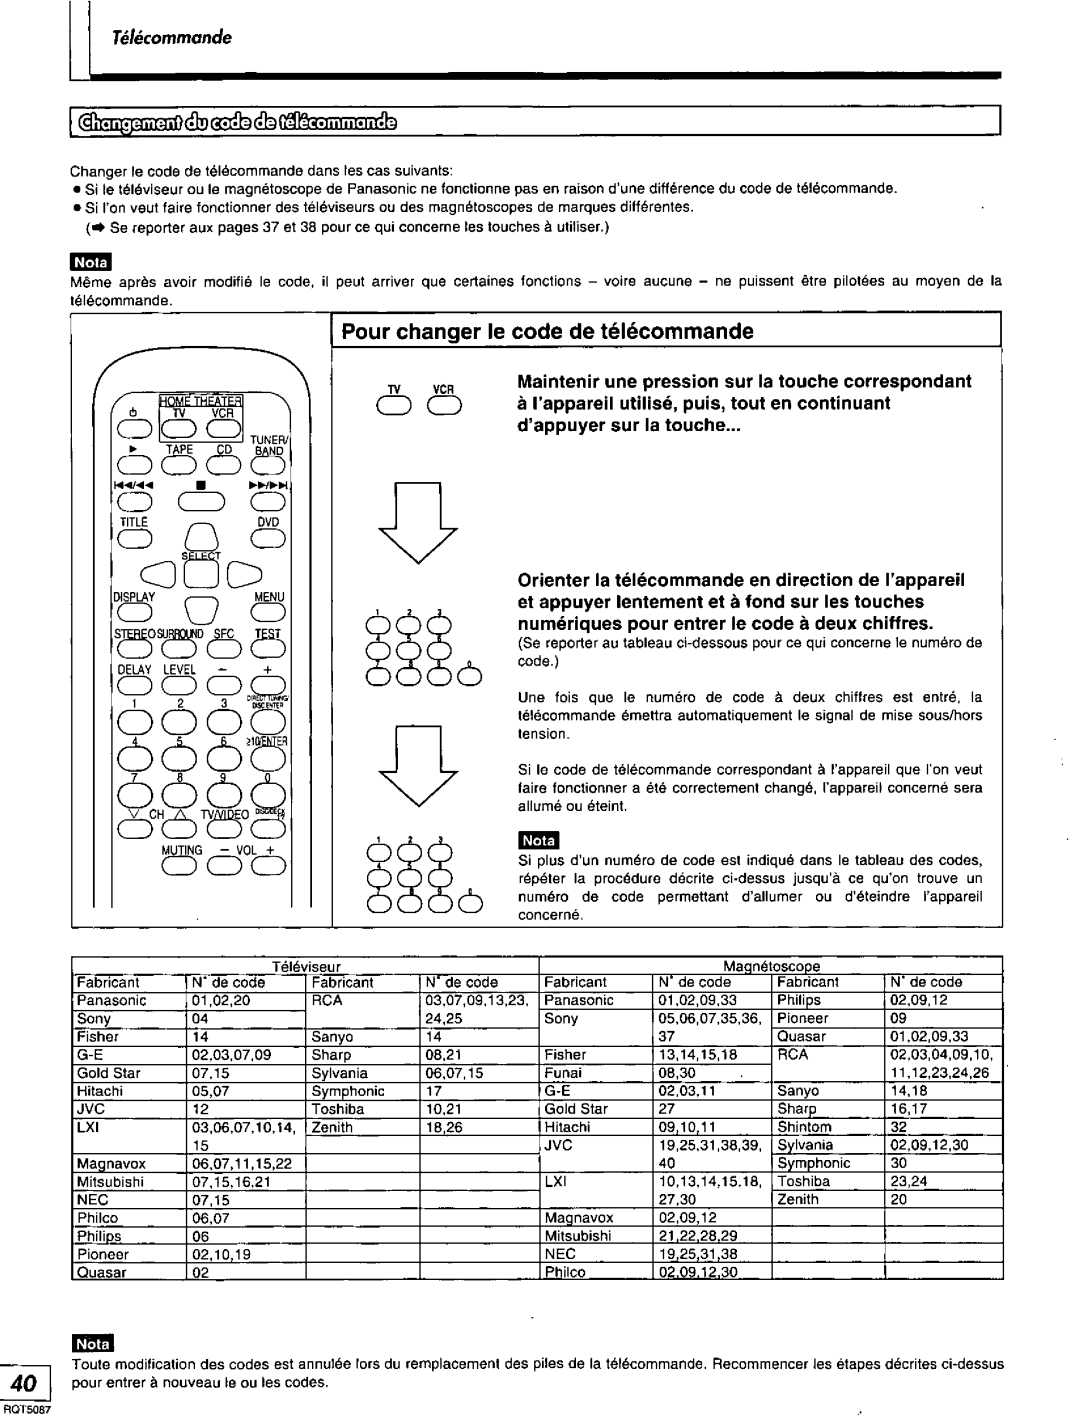 Technics SA-AX7, RQT5087-Y manual 